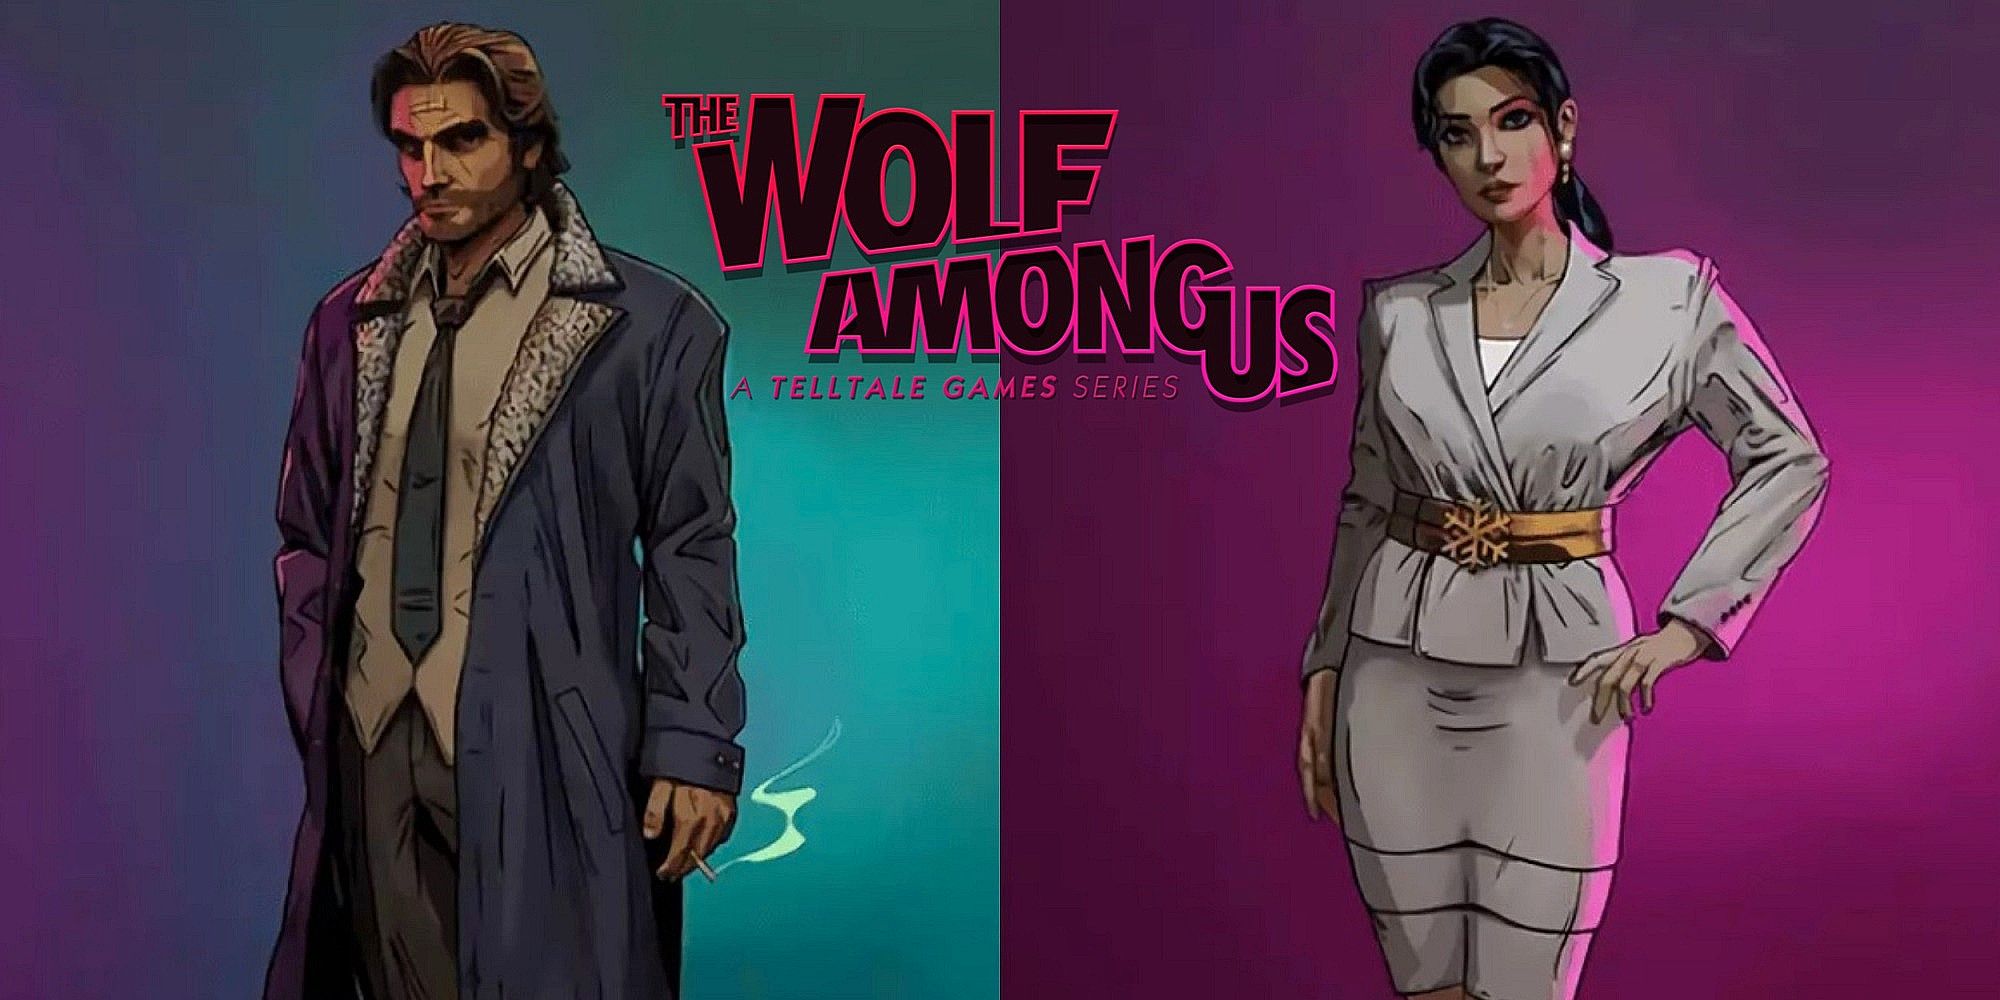 Показ The Wolf Among Us 2: A Telltale Series состоится 9 февраля